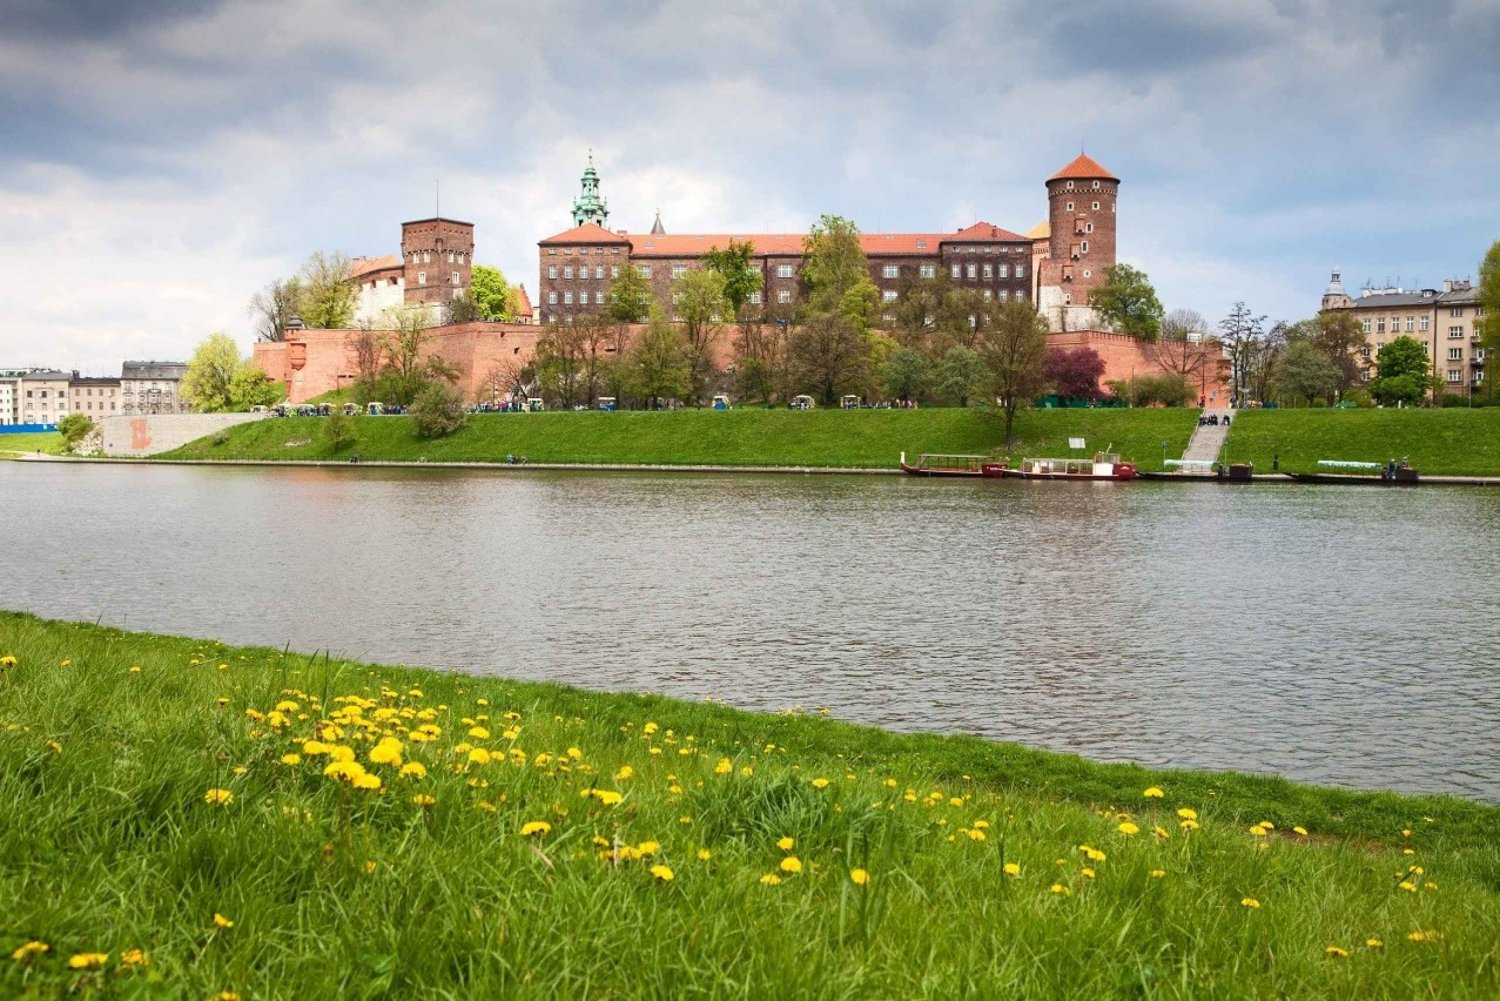 Krakova: Vistula-joen laiskotteluristeily